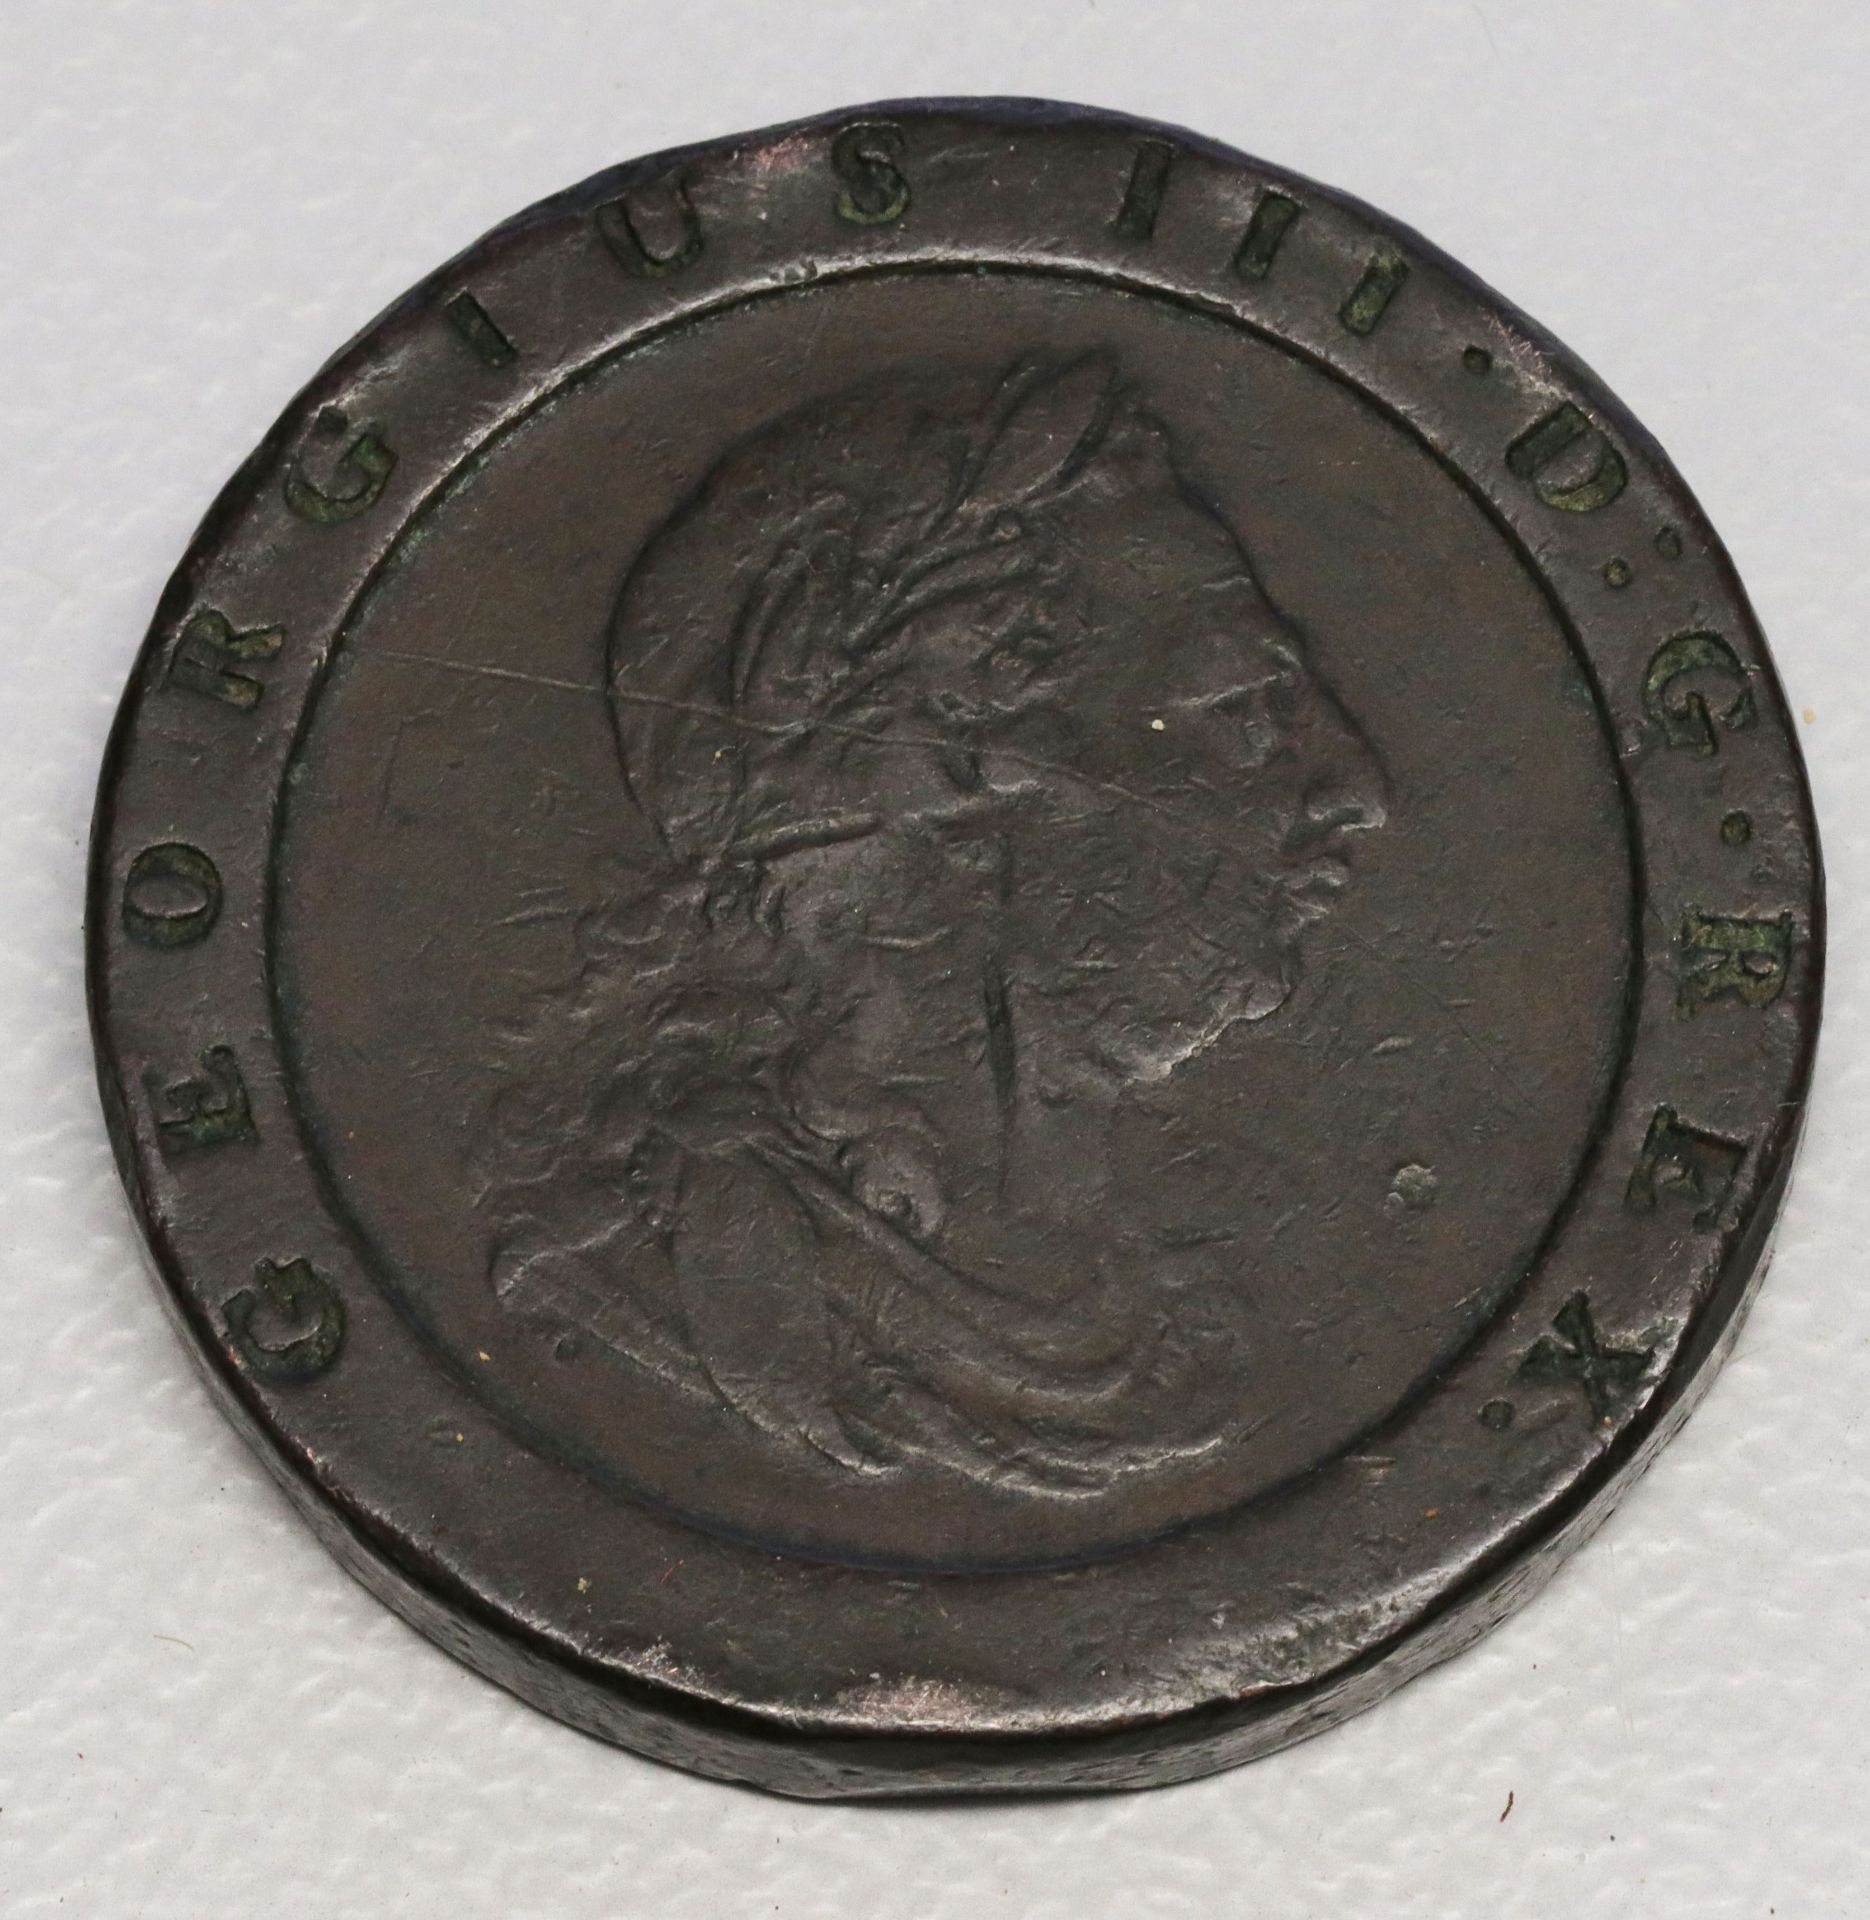 Münzkonvolut, Sammlungsauflösung, darunter: 2 Pence Großbritannien Cartwheel König Georg III. 1797 < - Bild 3 aus 4